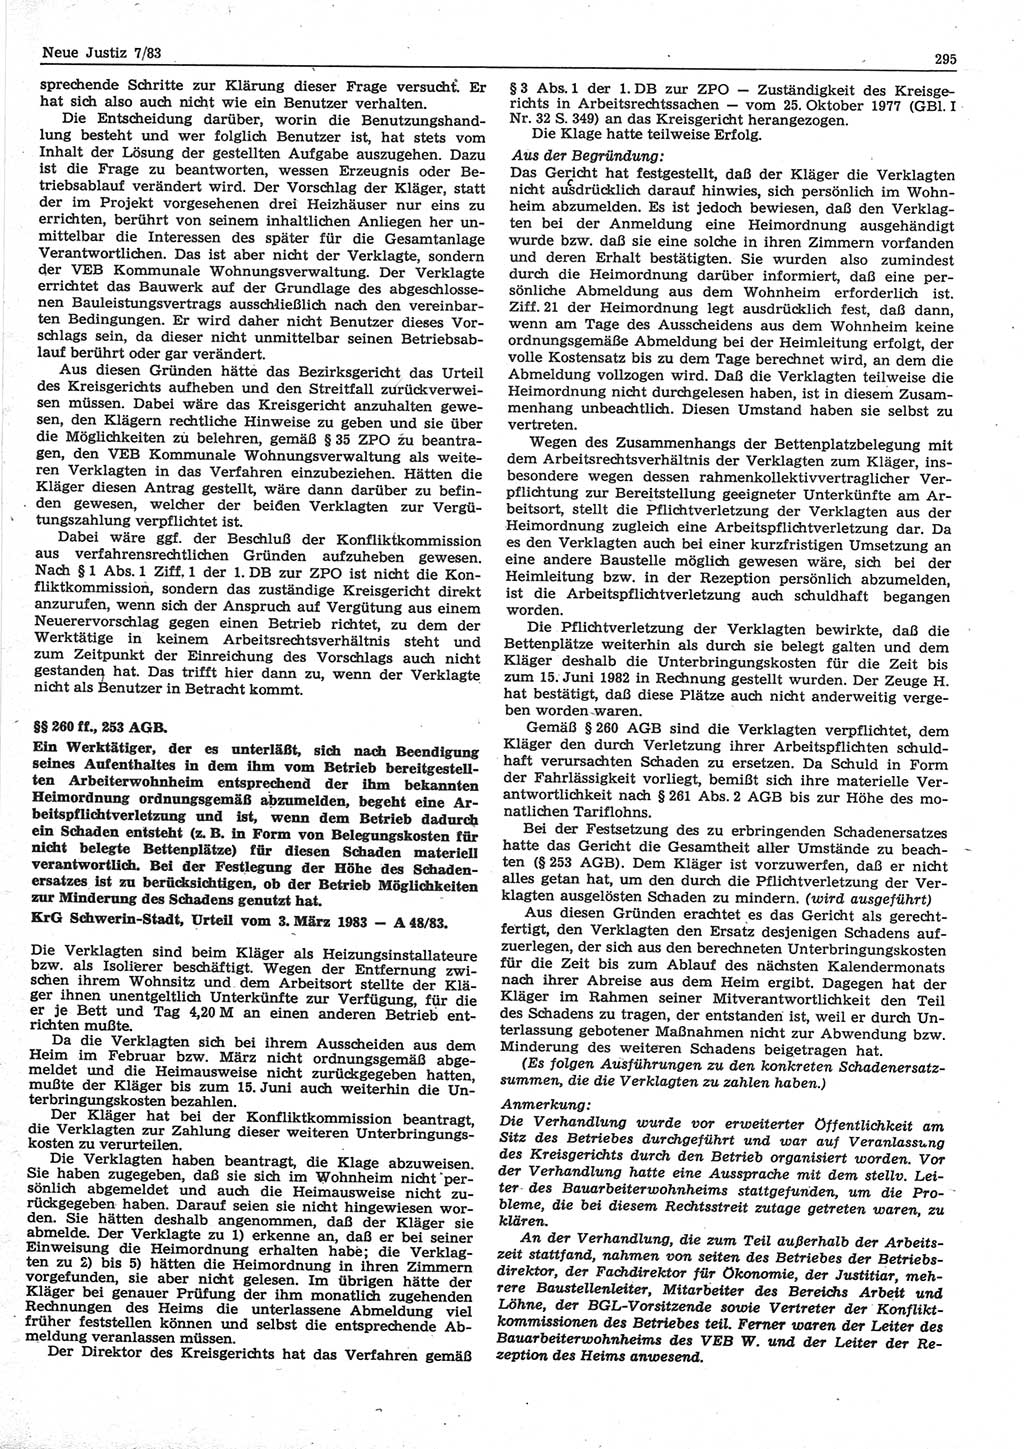 Neue Justiz (NJ), Zeitschrift für sozialistisches Recht und Gesetzlichkeit [Deutsche Demokratische Republik (DDR)], 37. Jahrgang 1983, Seite 295 (NJ DDR 1983, S. 295)